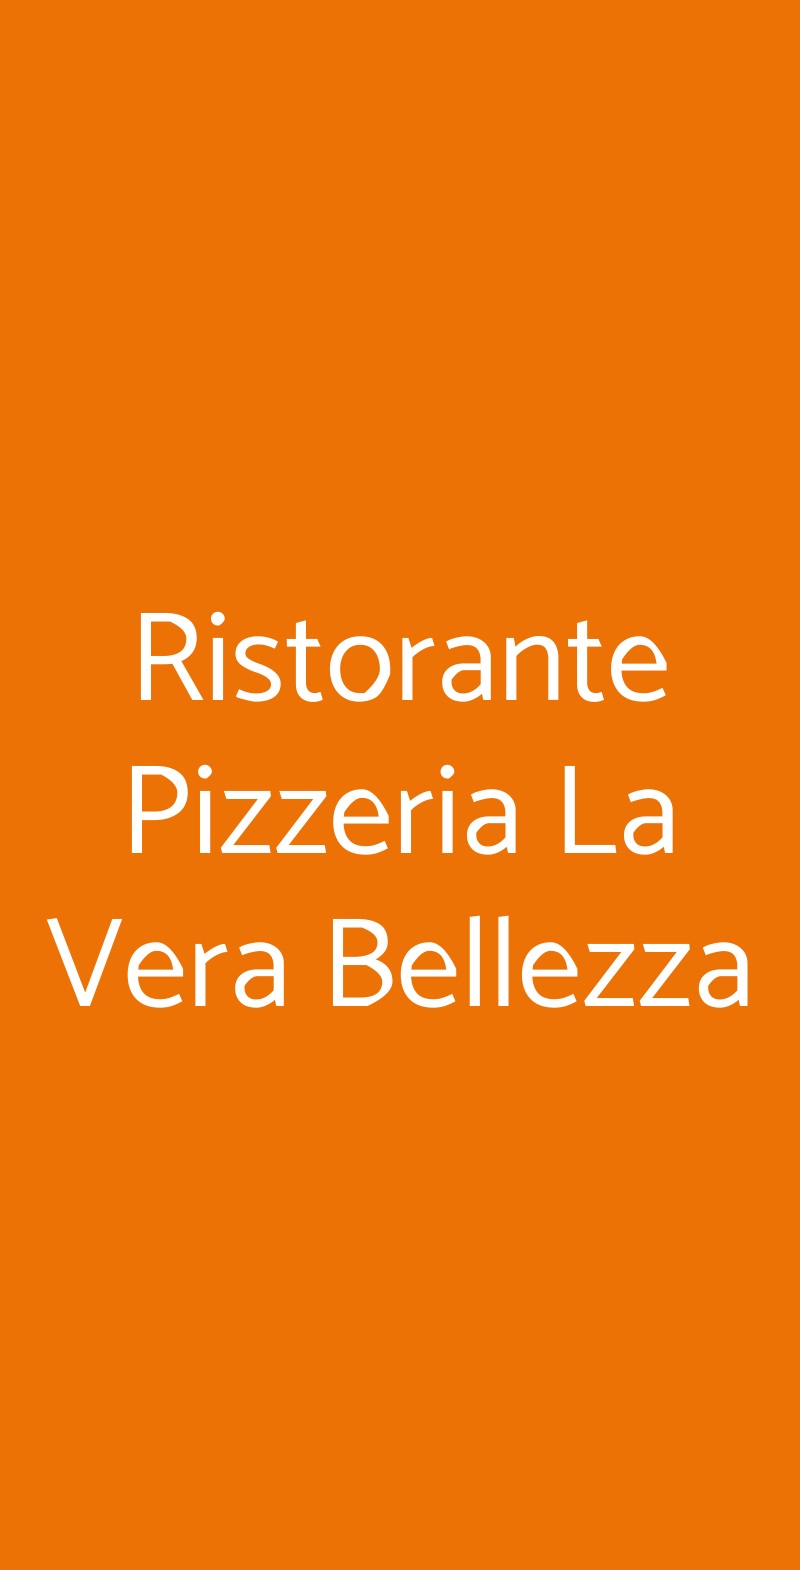 Ristorante Pizzeria La Vera Bellezza Caserta menù 1 pagina